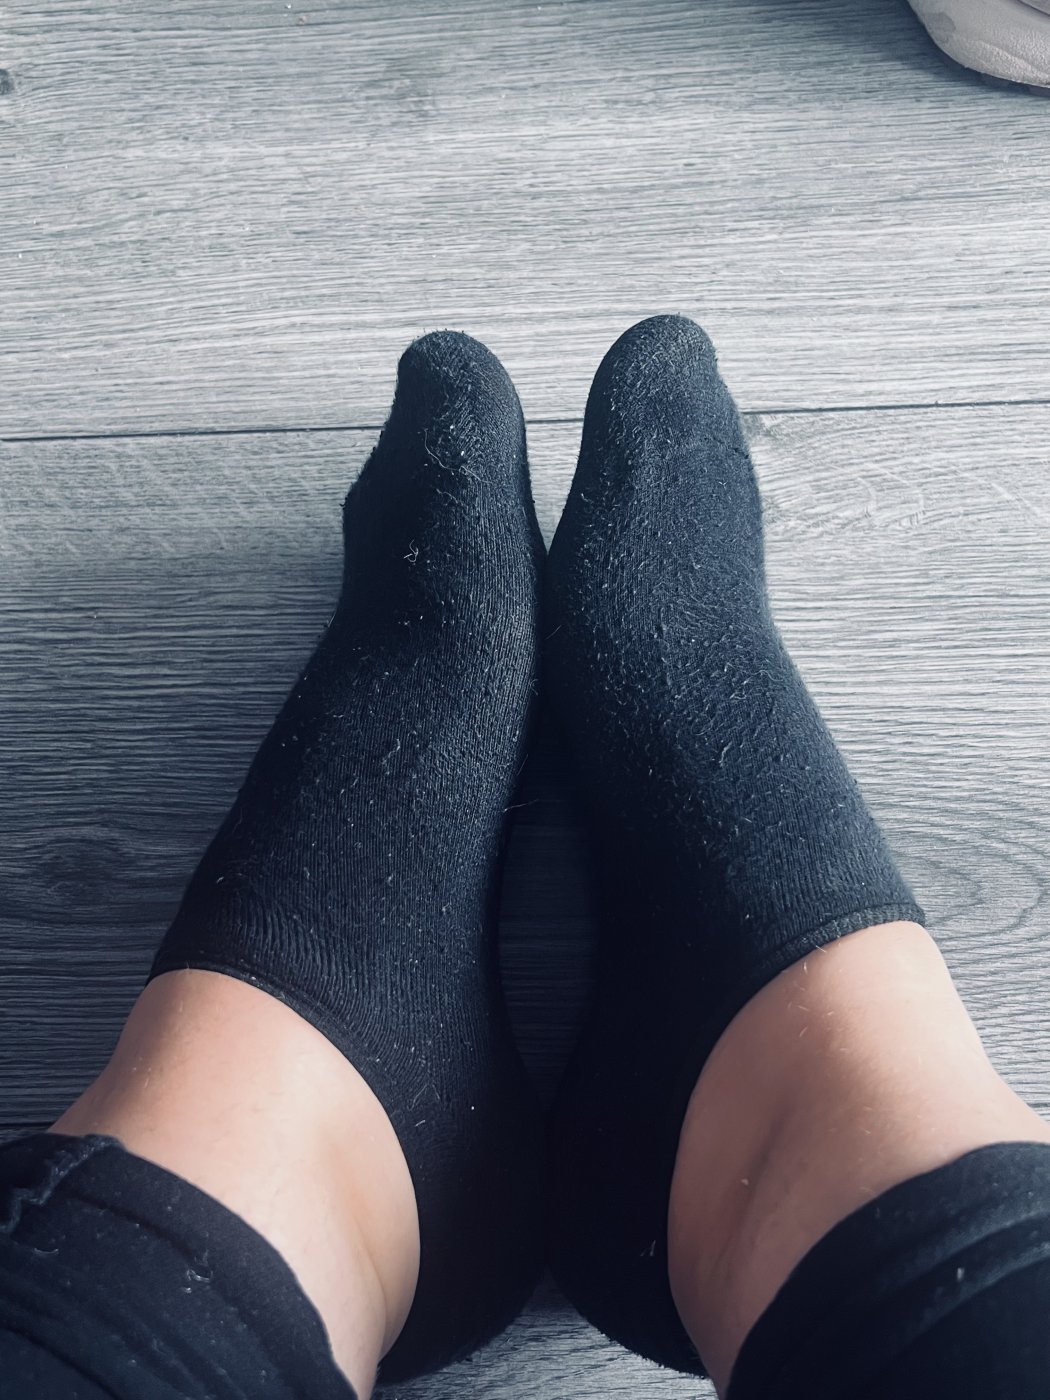 Used black ankle socks